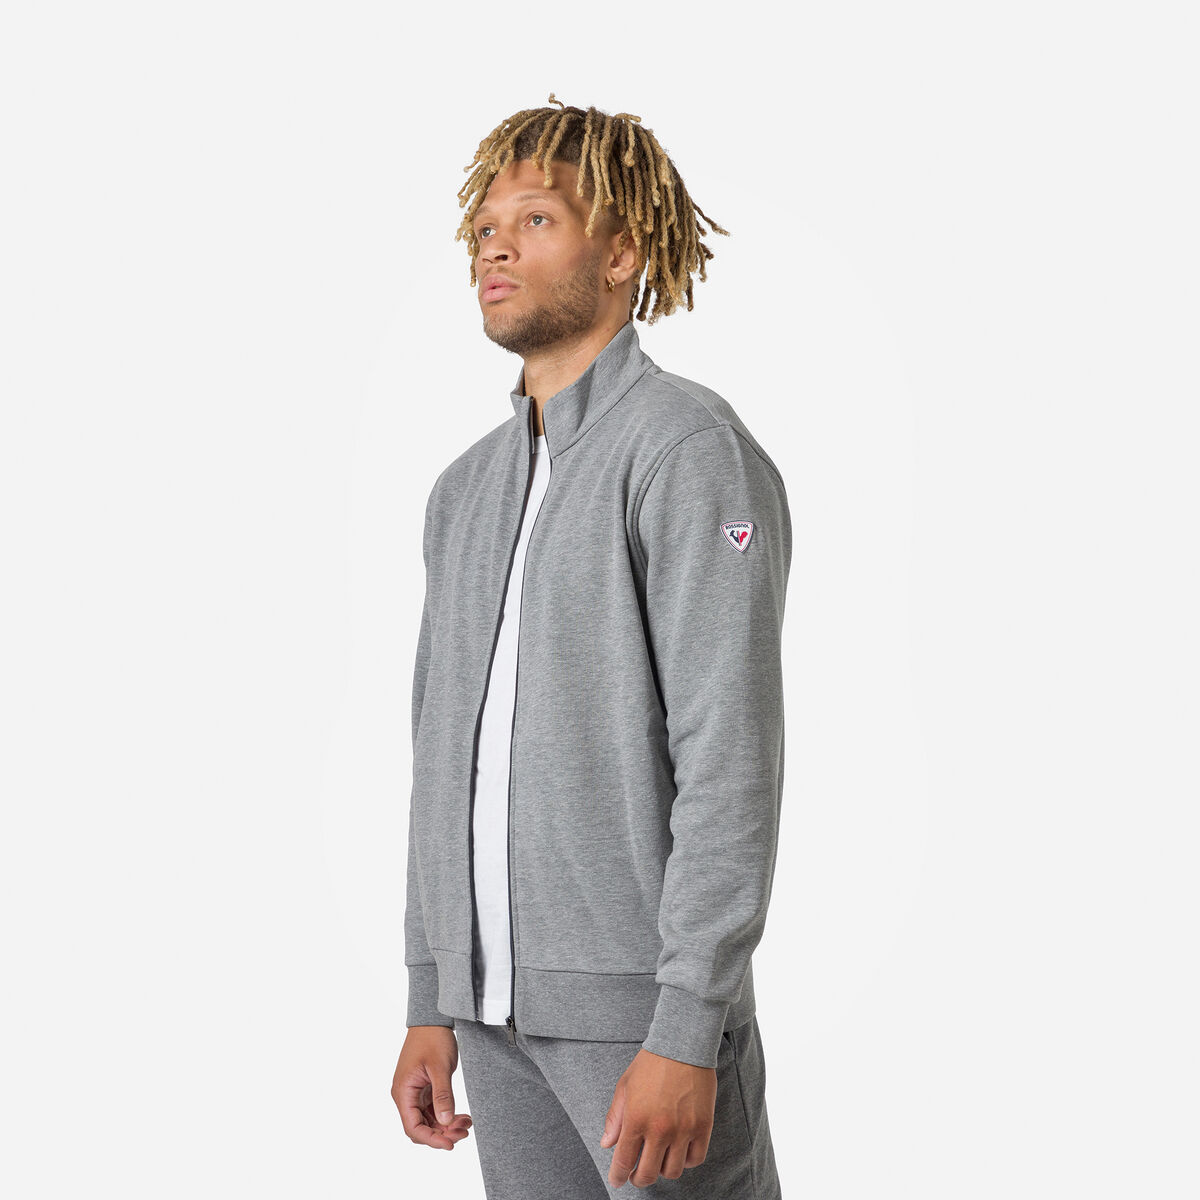 Rossignol Men's full-zip logo fleece sweatshirt Grey